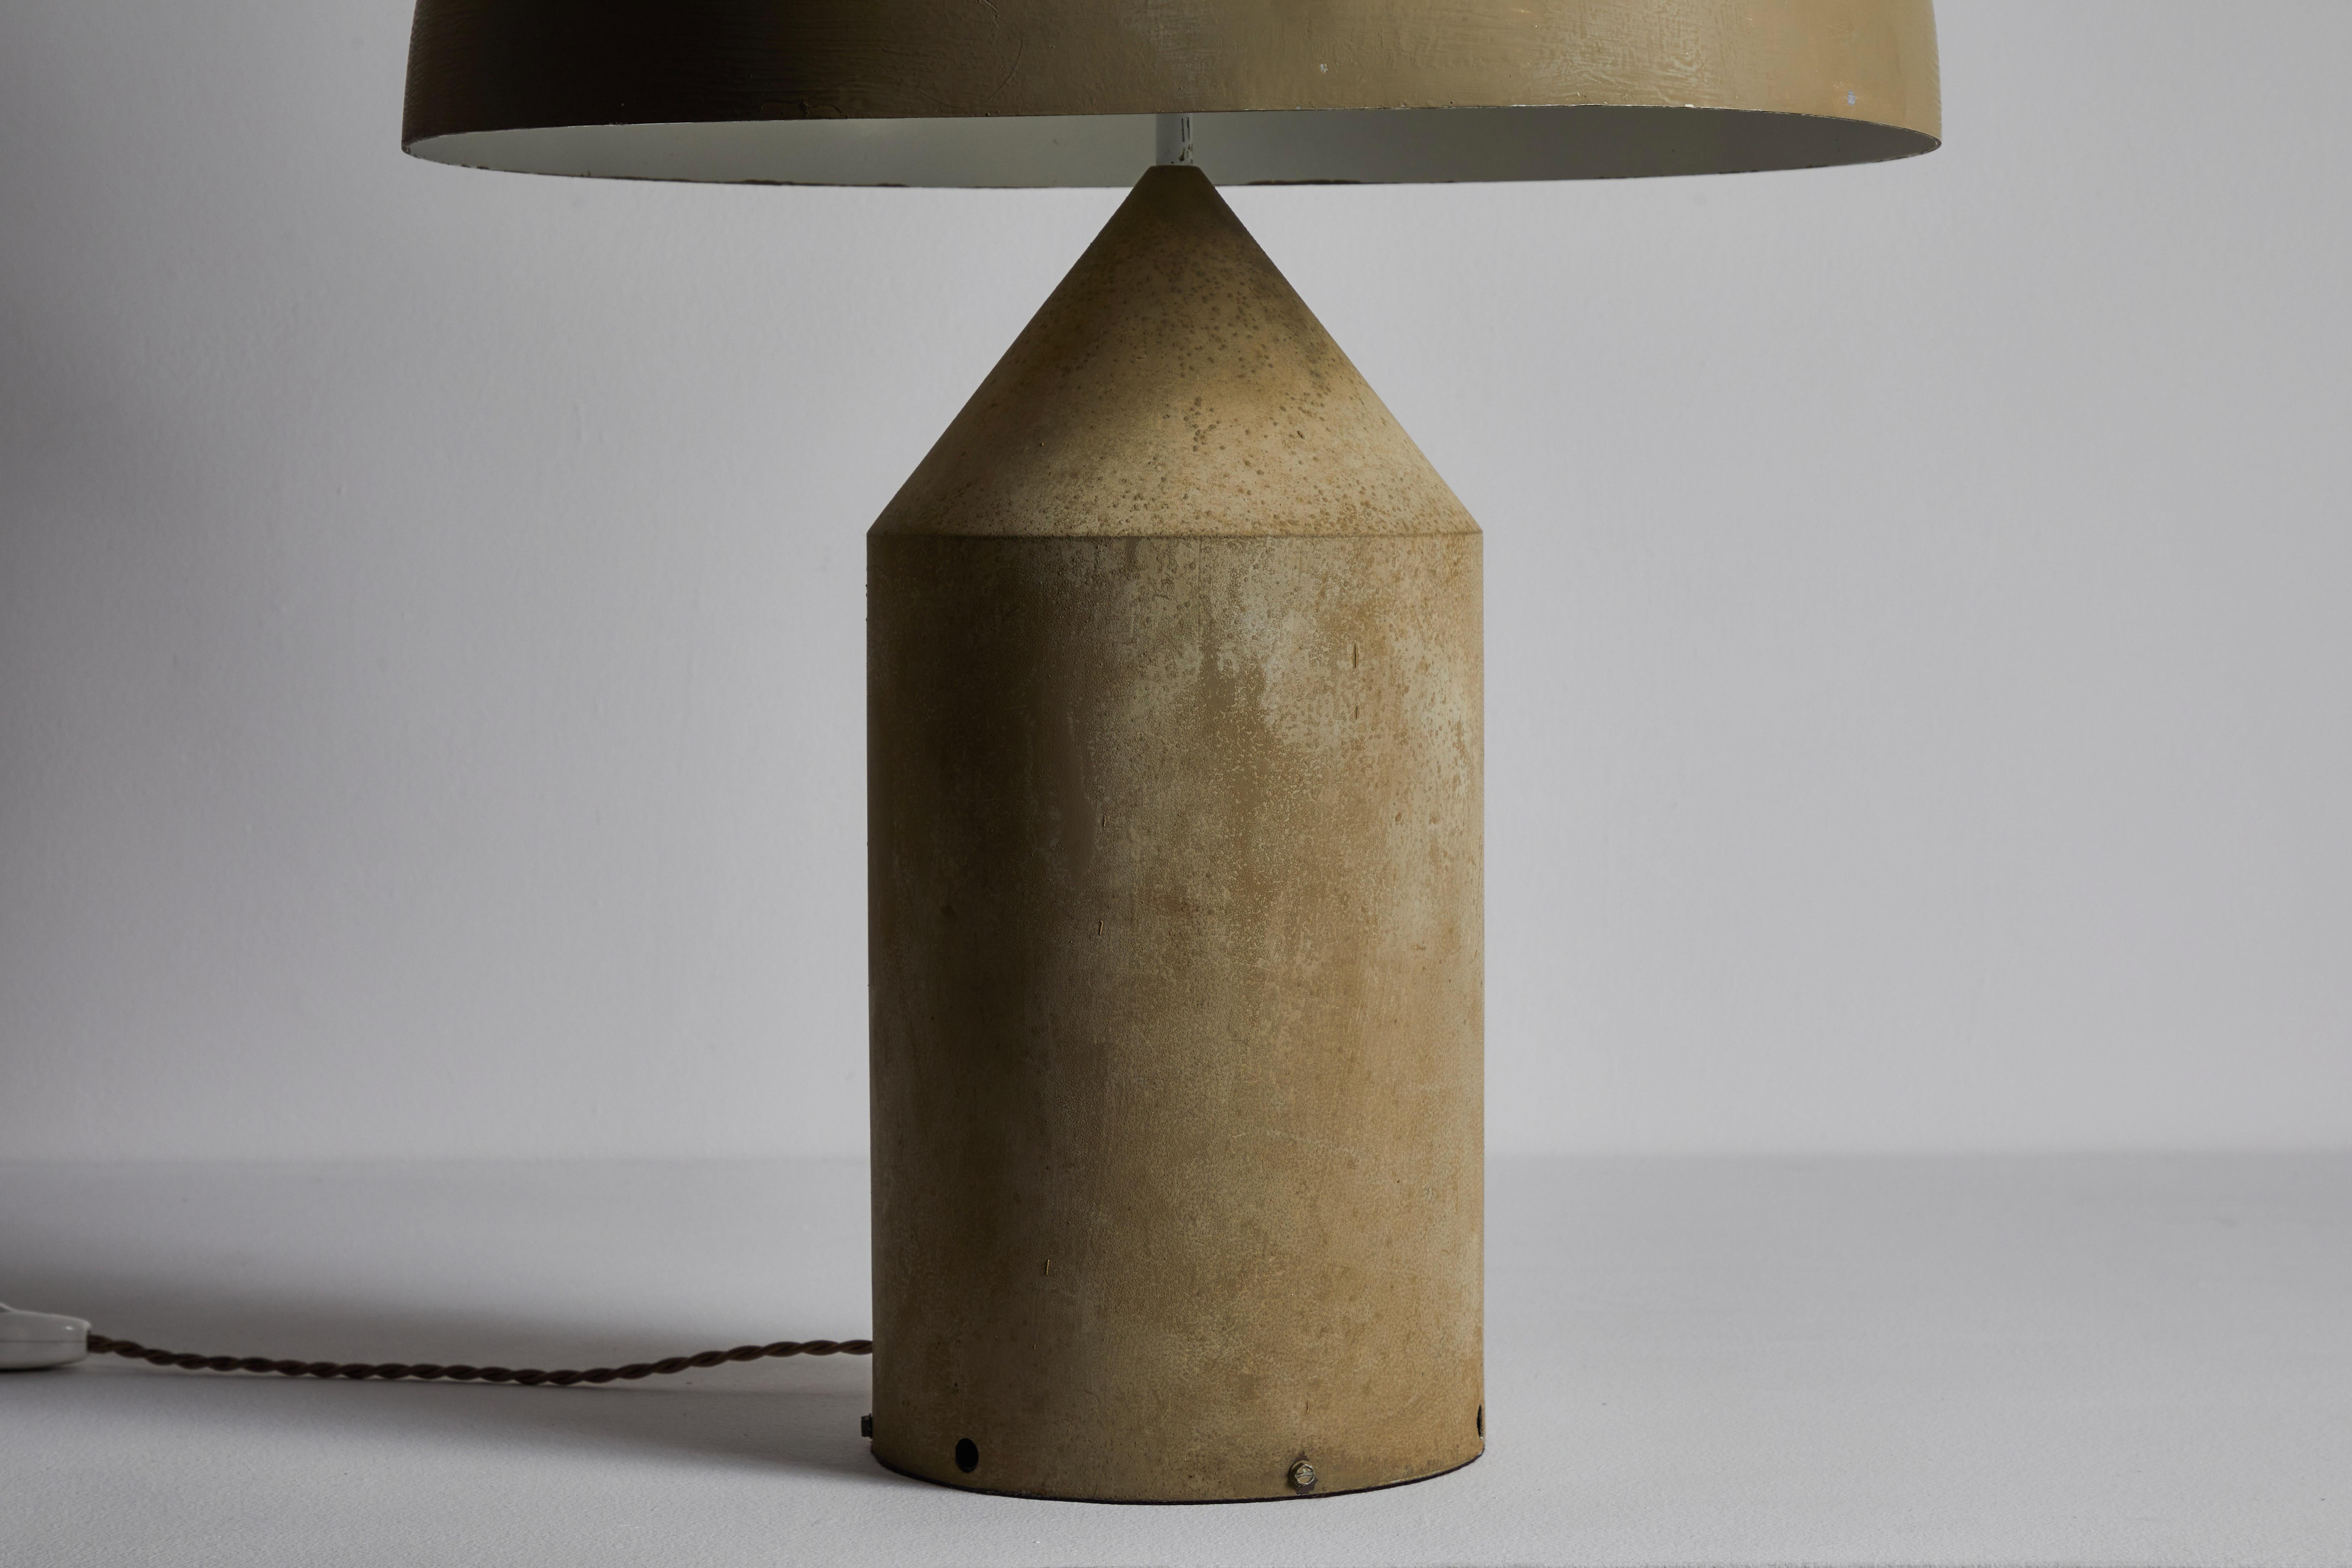 Rare Atollo Table Lamp by Vico Magistretti for Oluce 1